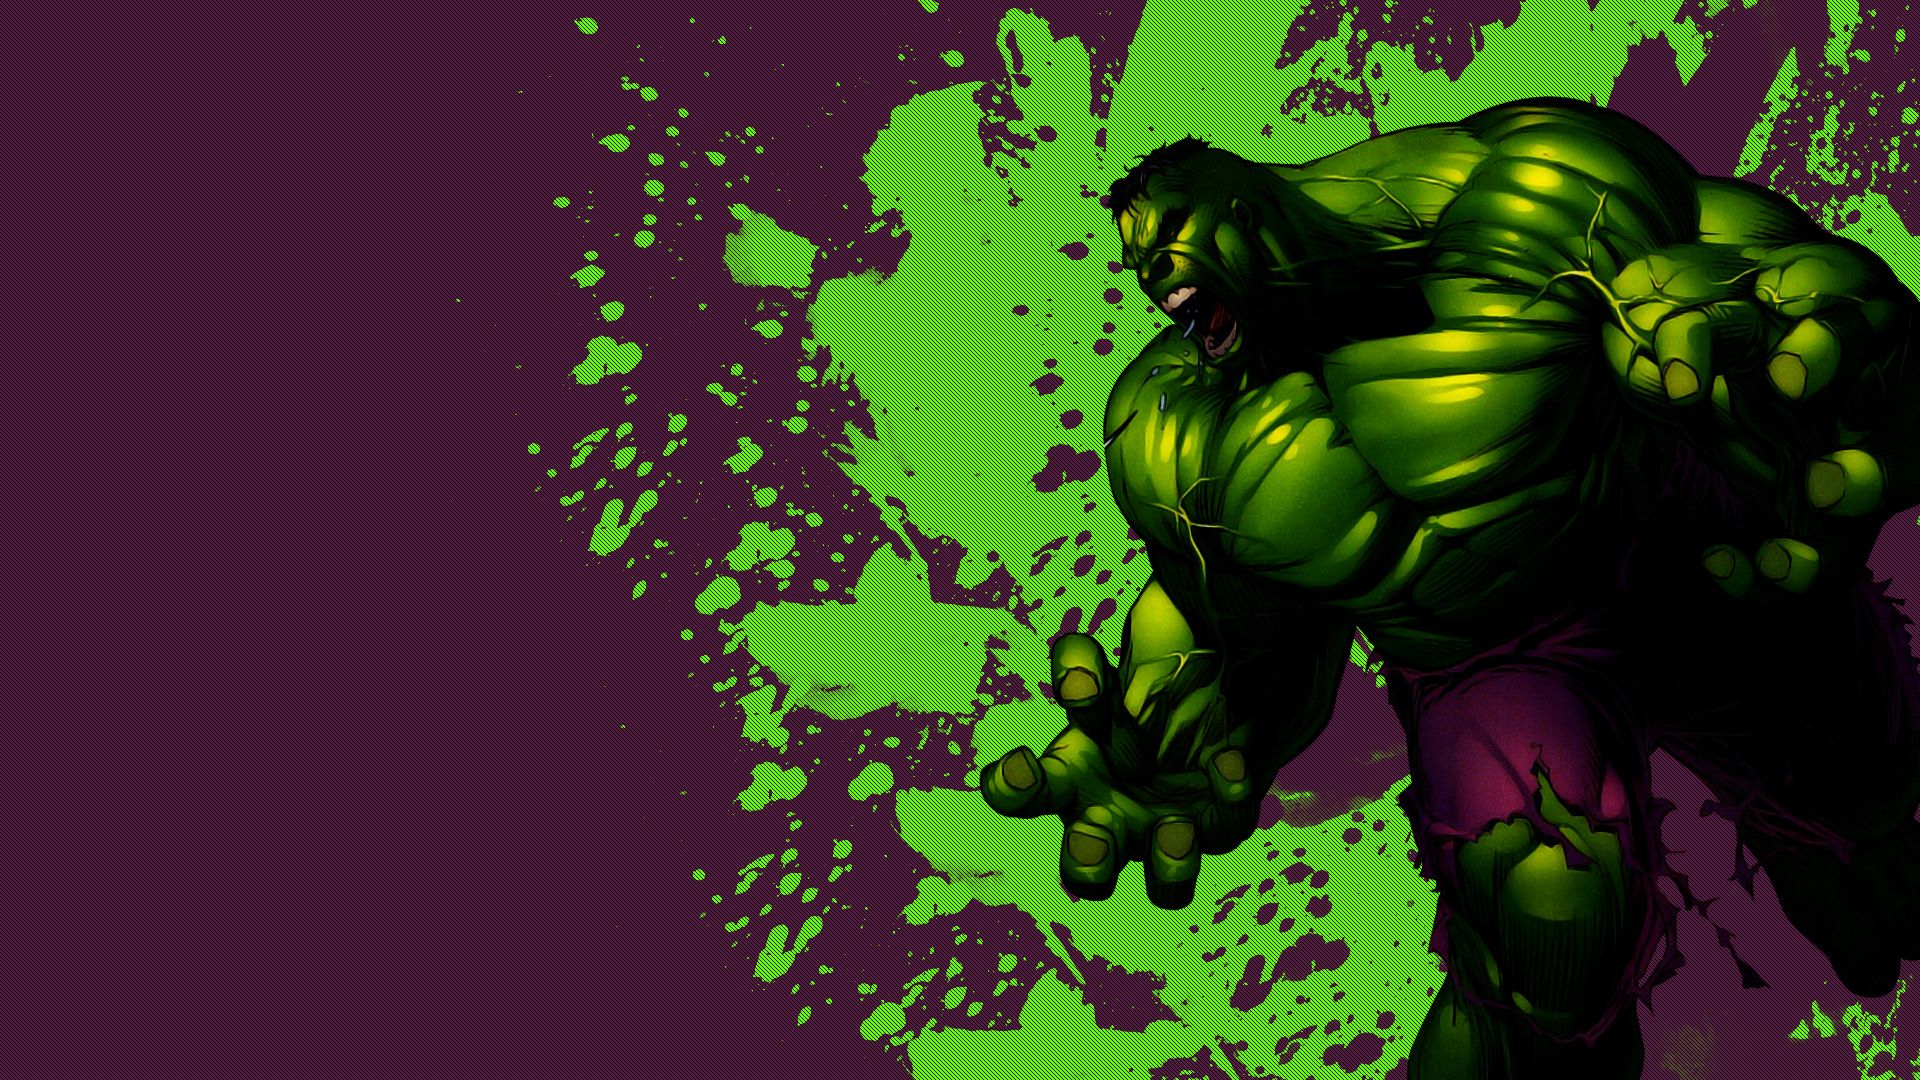 40 Incredible Hulk Wallpaper for desktop